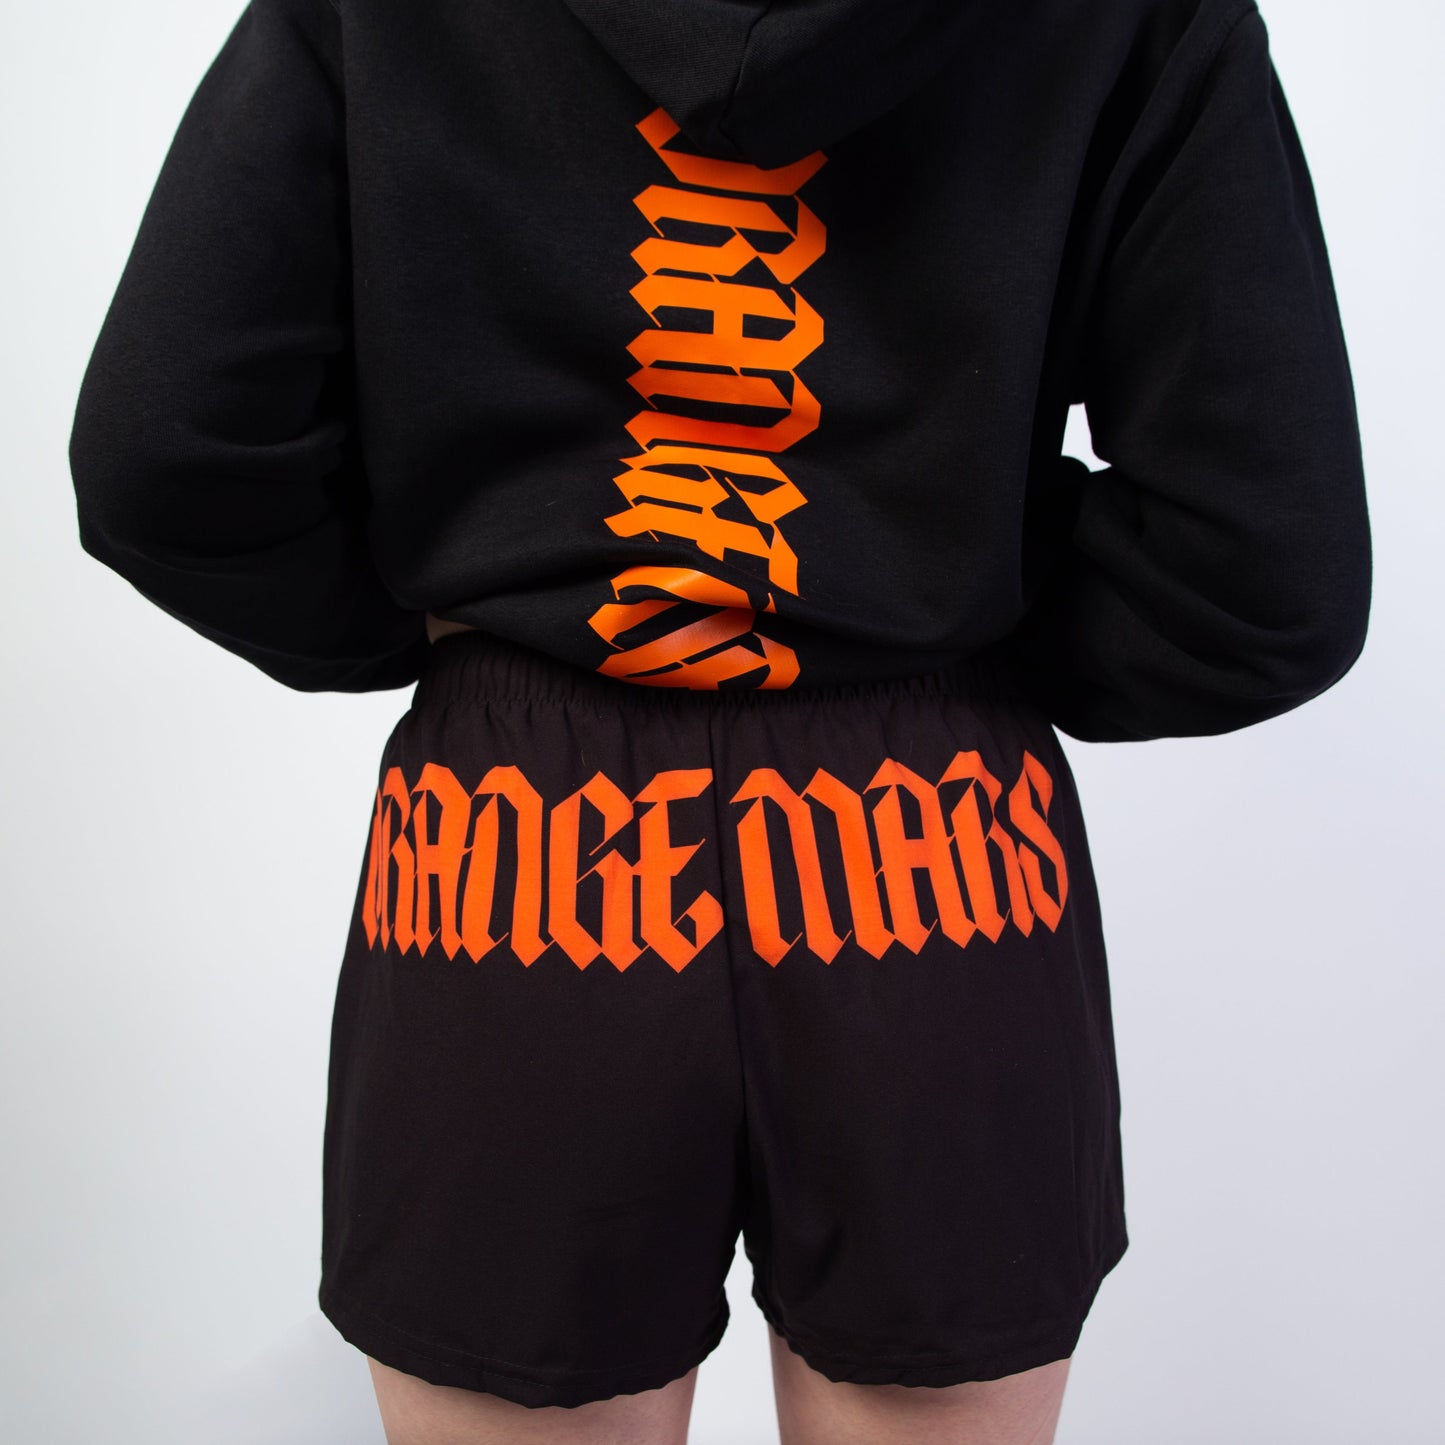 Le modèle "MINI GOTH MARS SHORT" existe en 4 coloris (orange, noir, gris ou blanc). C'est un mini short streetwear d'été confortable, taille haute à porter au-dessus des hanches, avec son design à l'arrière "ORANGE MARS" façon gothique ultra stylé. Agréable, élastique et surtout adapté à toutes les morphologies. Crédits Photographie ©Astrid Manoukian / ORANGE MARS OFFICIAL - SHOP ONLINE 